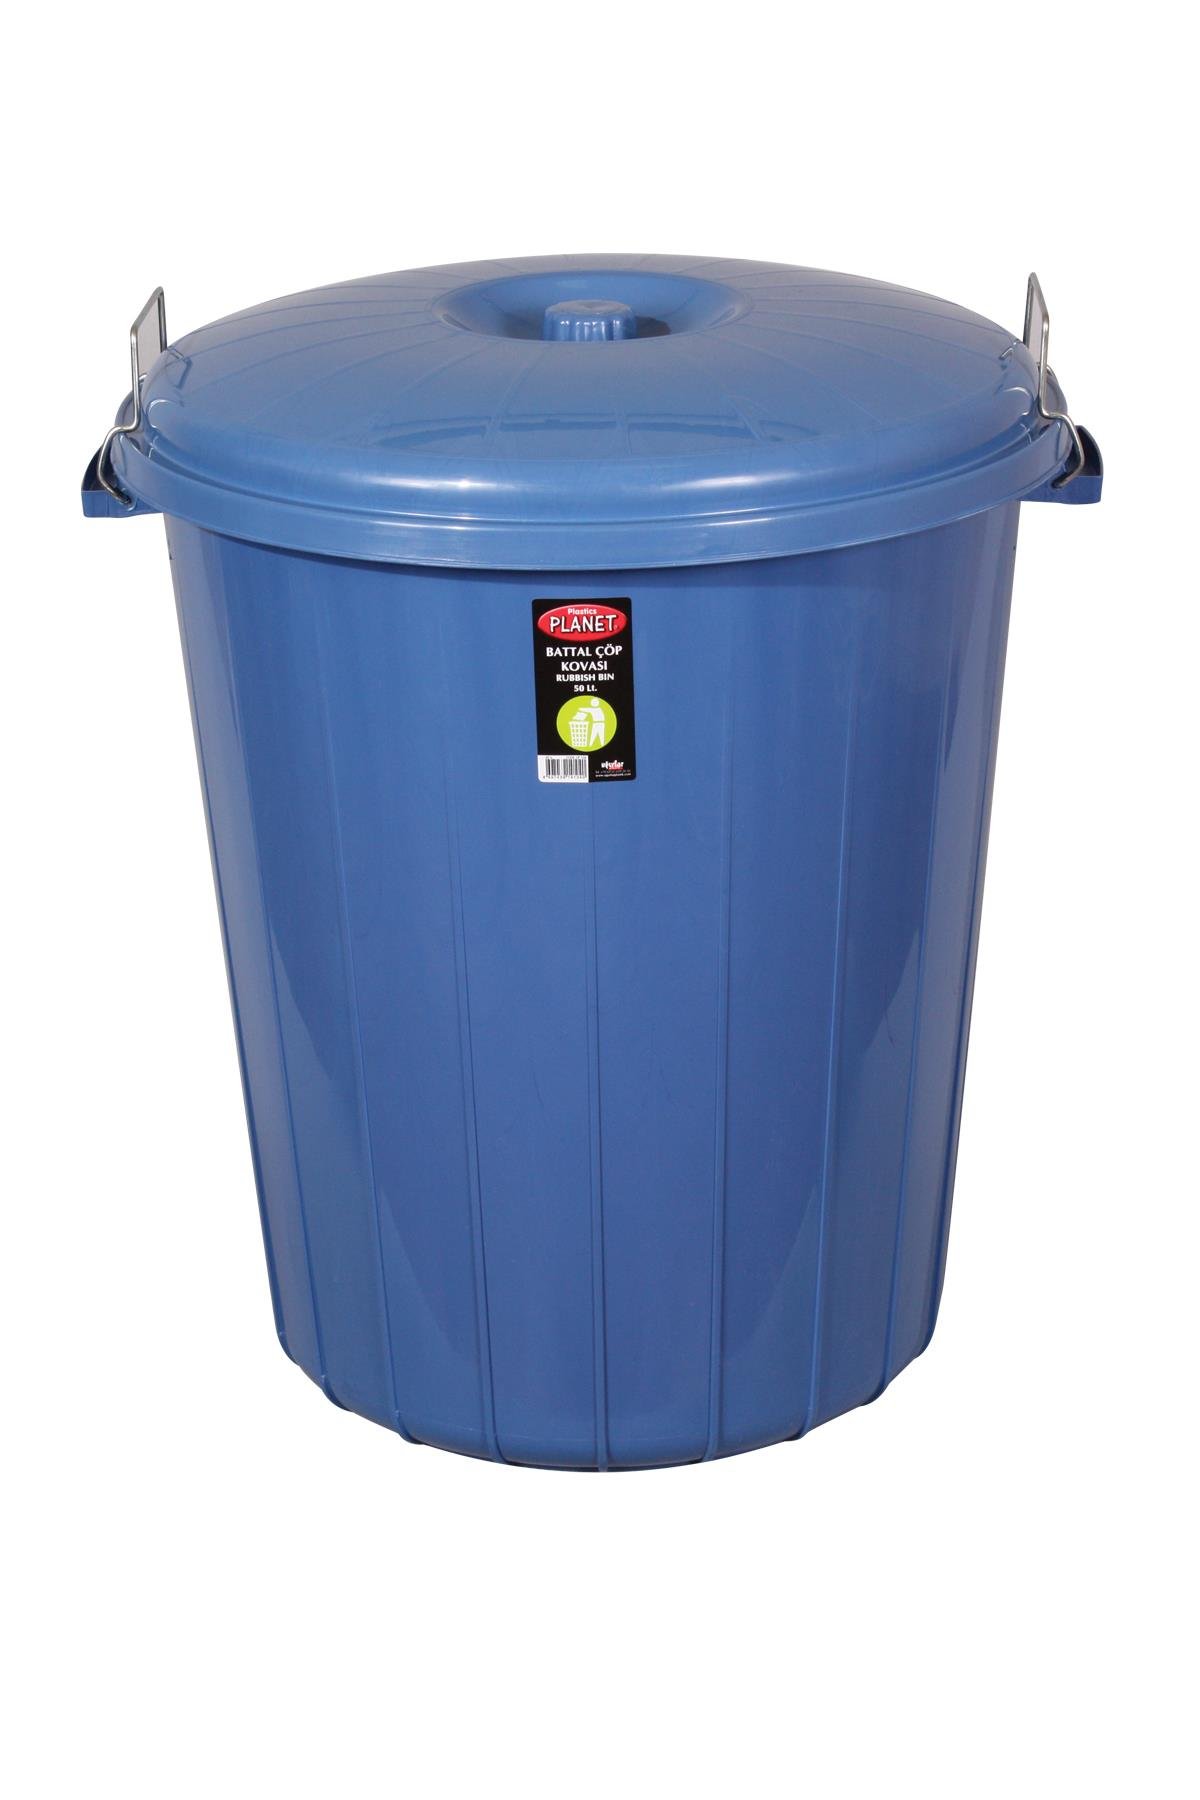 Kilitli Çöp Kovası Renkli Herkül 70 LT No. 4 Mavi | Uğurlar Plastik